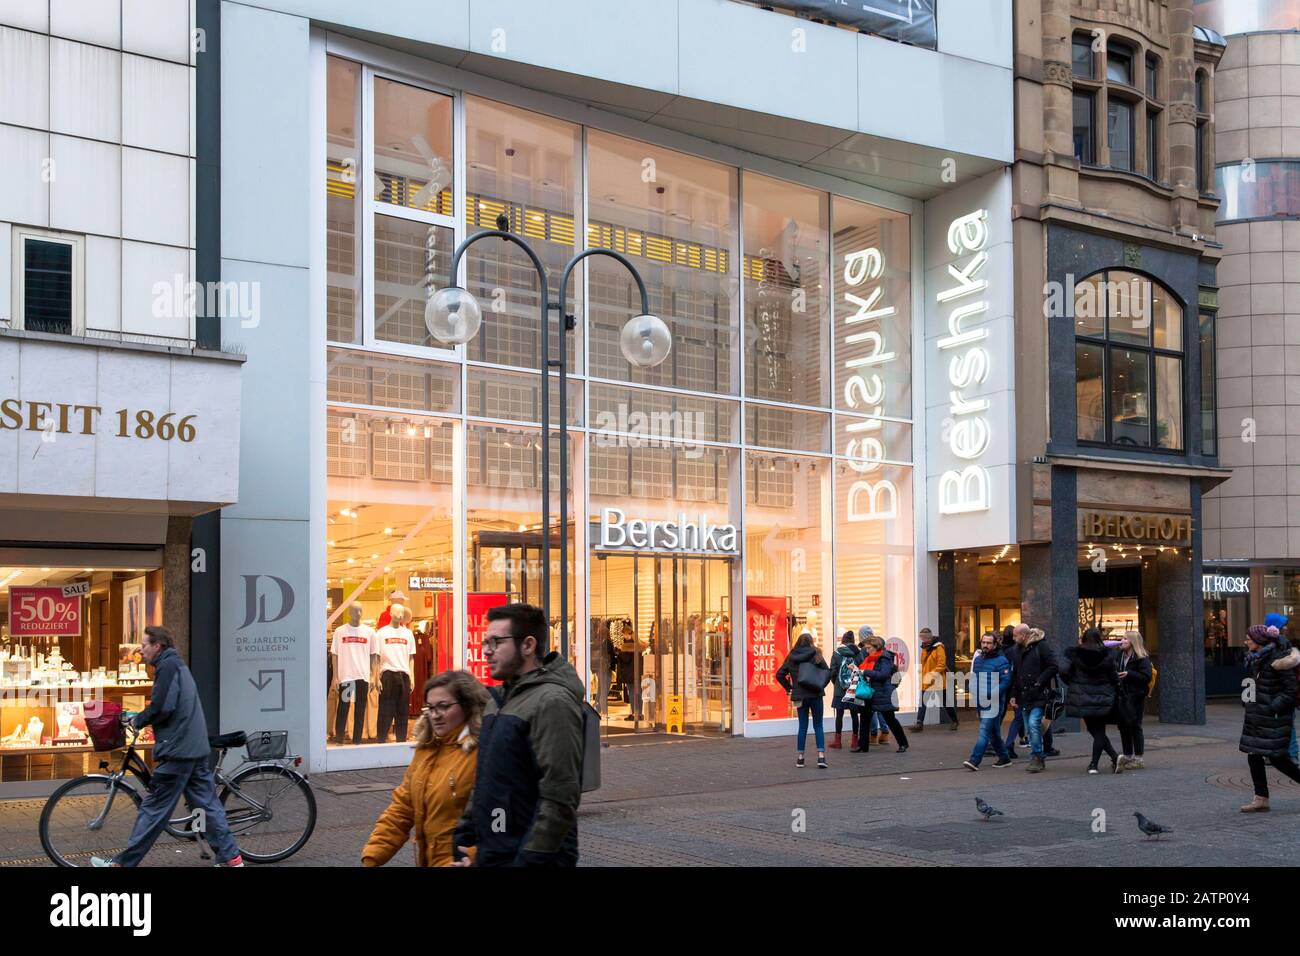 fashion store Bershka on shopping street Schildergasse, Cologne, Germany.  Modegeschaeft Bershka in der Einkaufsstrasse Schildergasse, Koeln, Deutschl  Stock Photo - Alamy